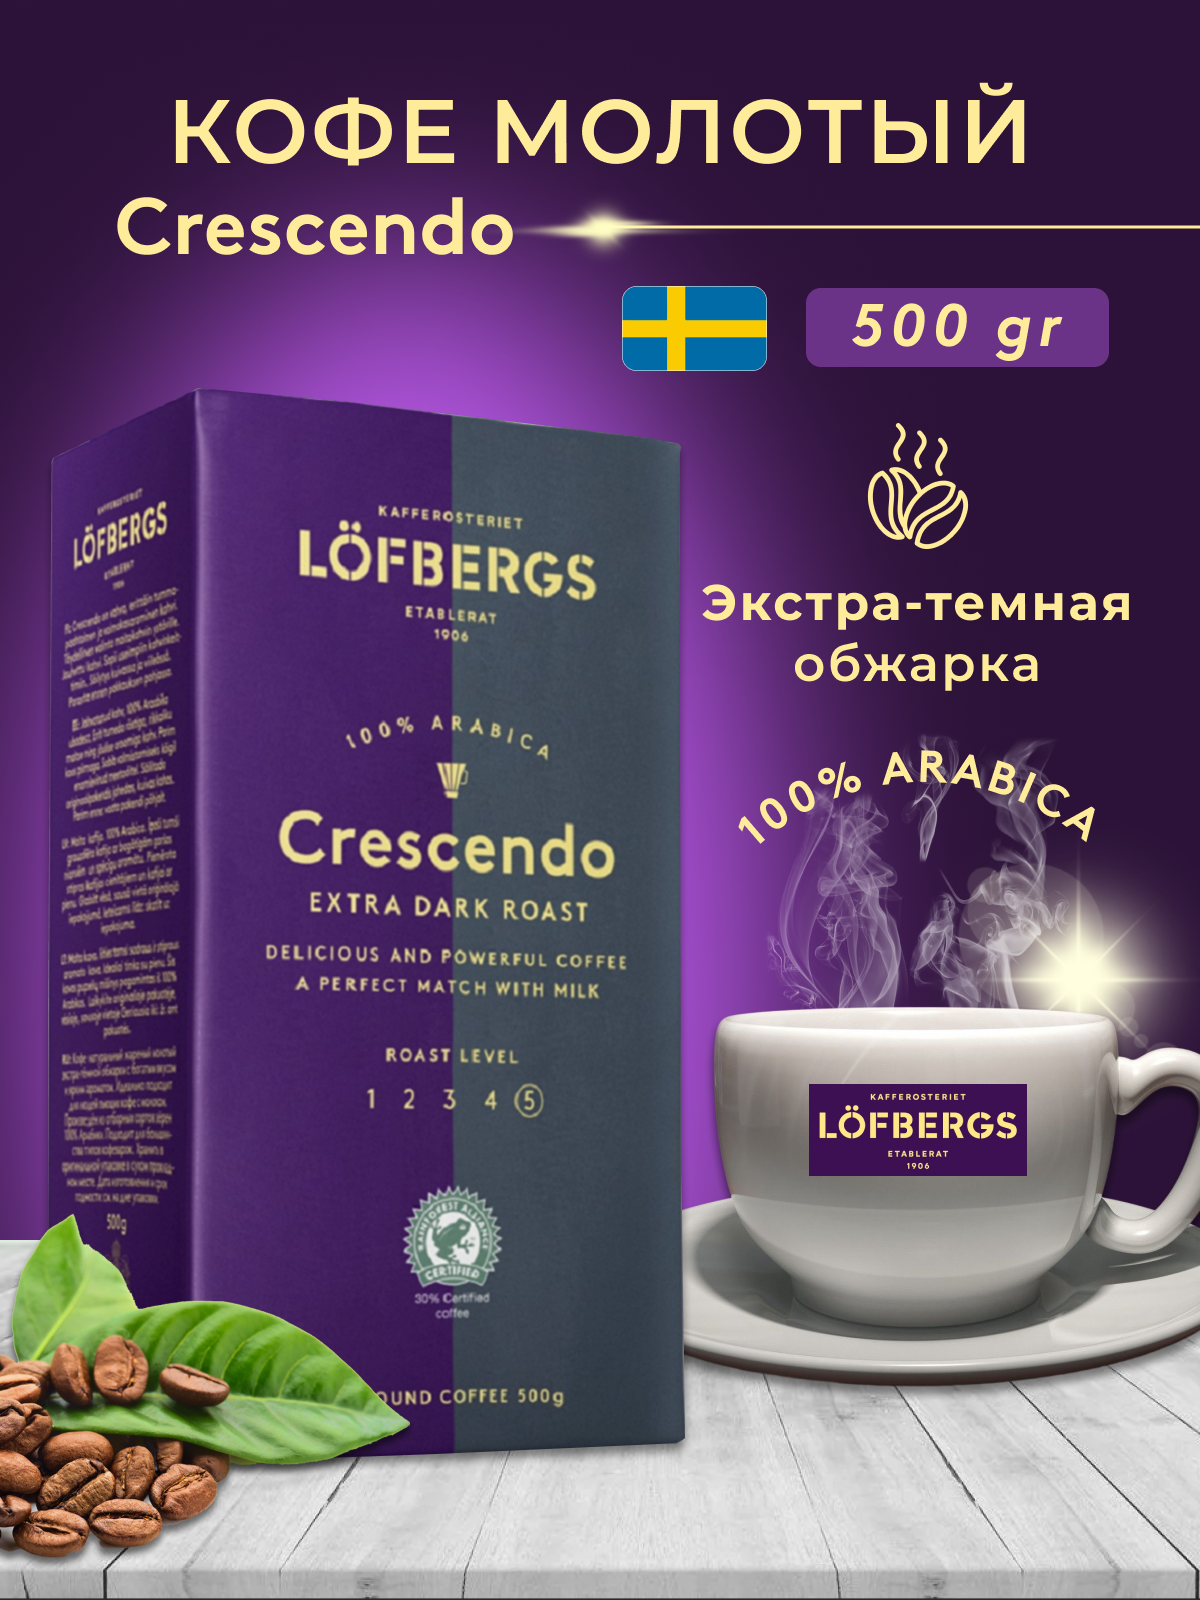 Кофе молотый Lofbergs Crescendo 500 гр